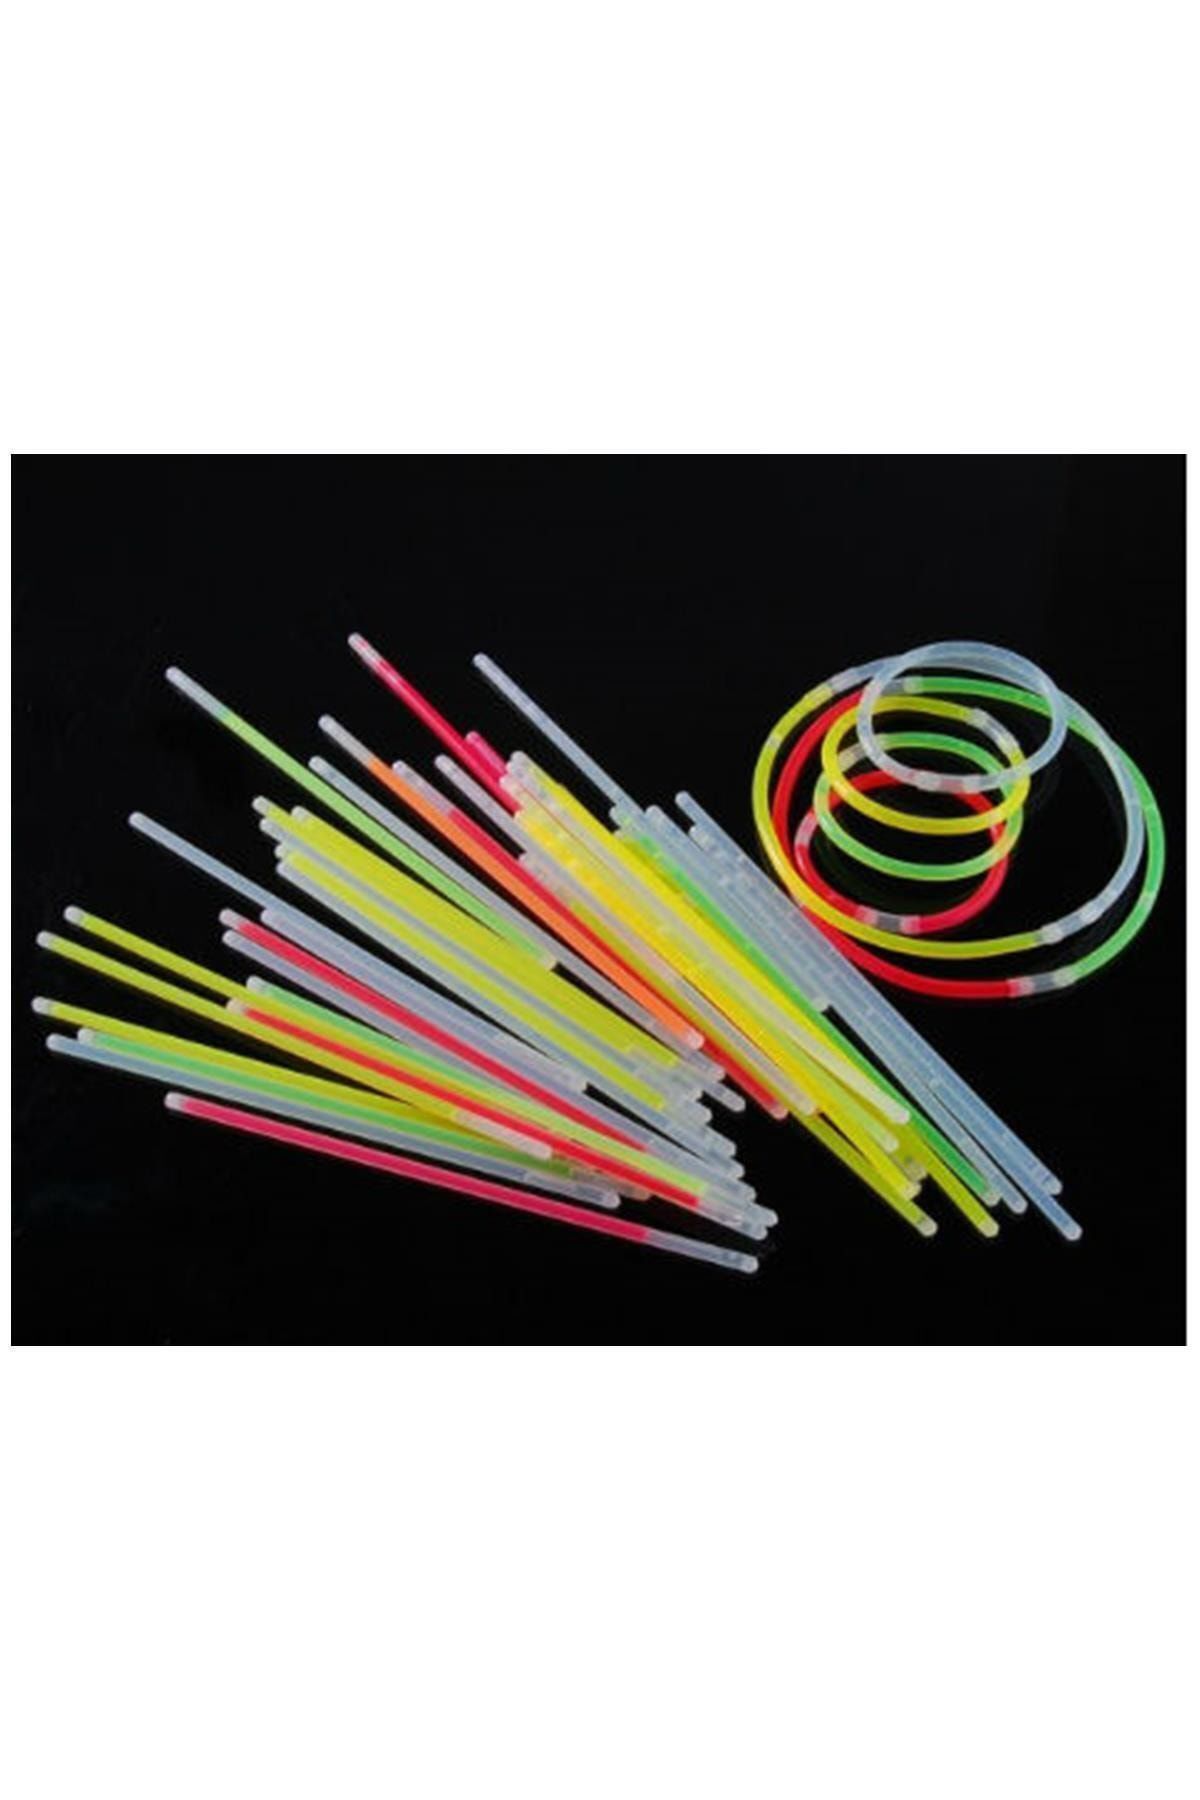 rennway Glow Stick Bracelet Fosforlu Kırılan Çubuk Bileklik 10 Adet